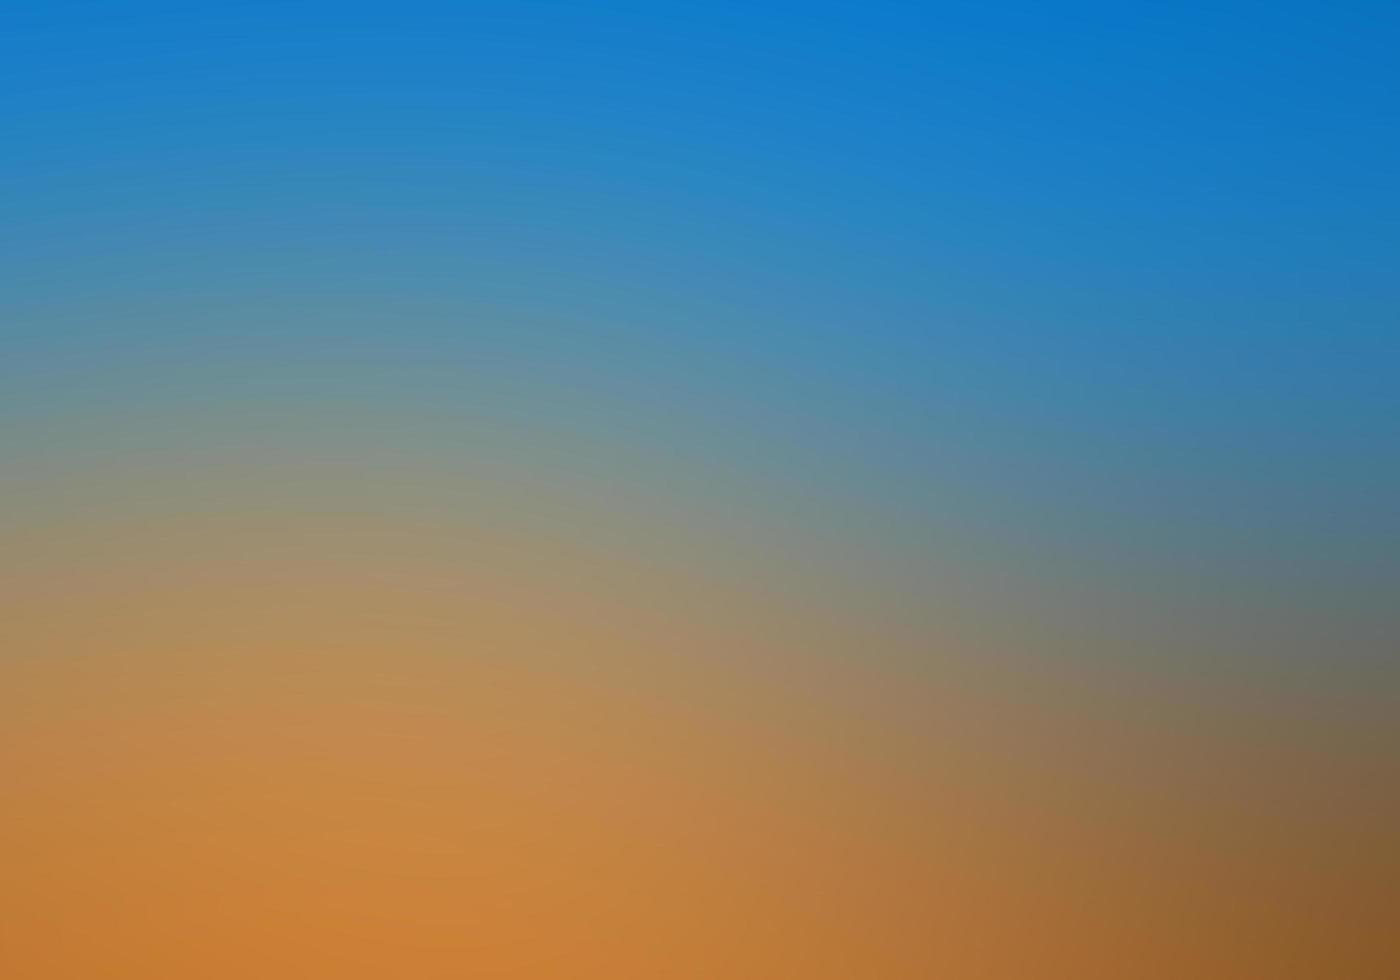 gradientes suaves efectos de fondo noche azul foto